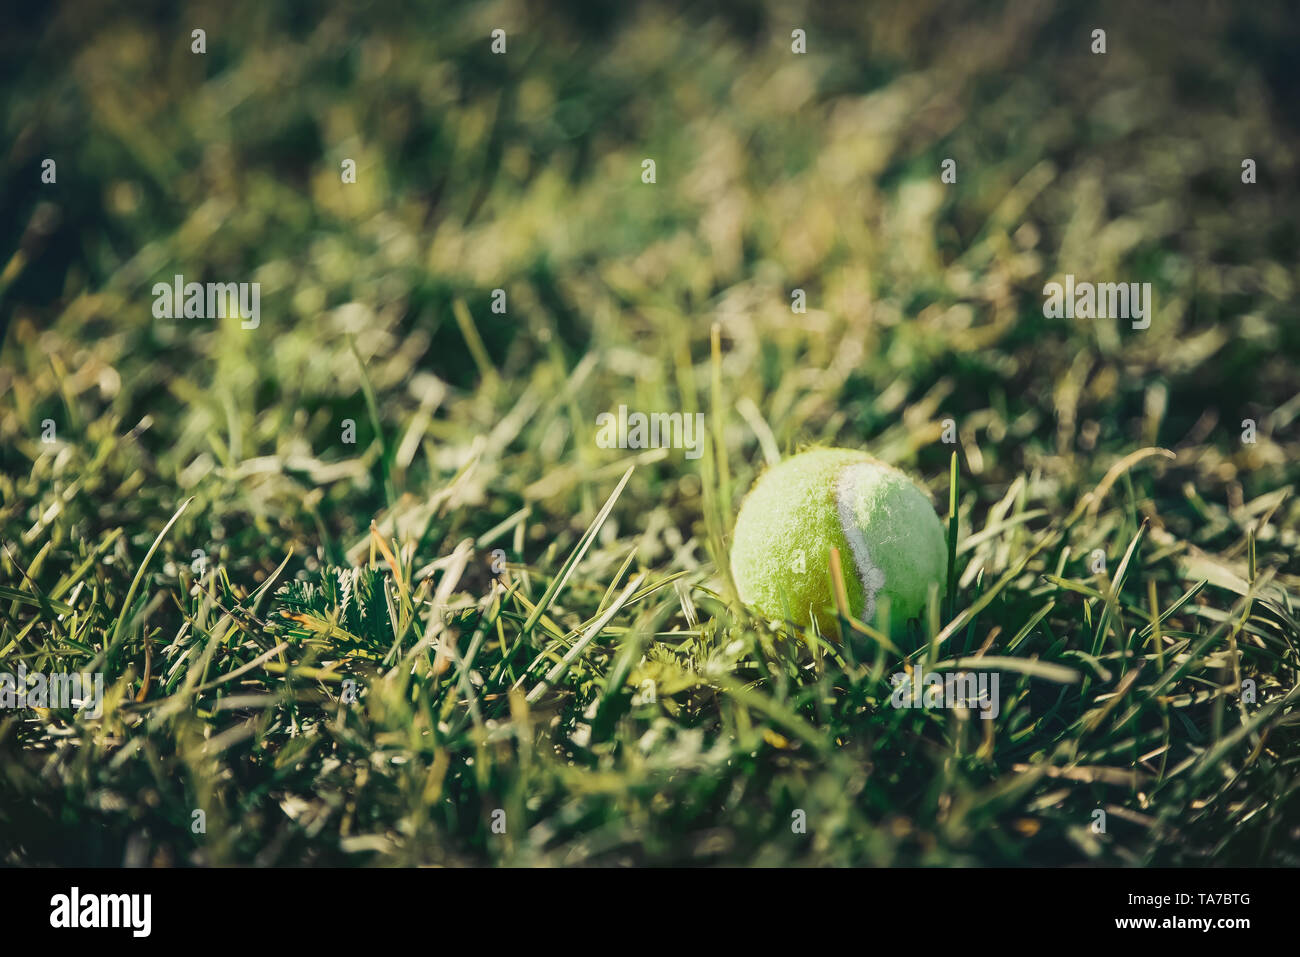 Tennis ball lies in green grass Summer background. Outdoor summer games concept Stock Photo